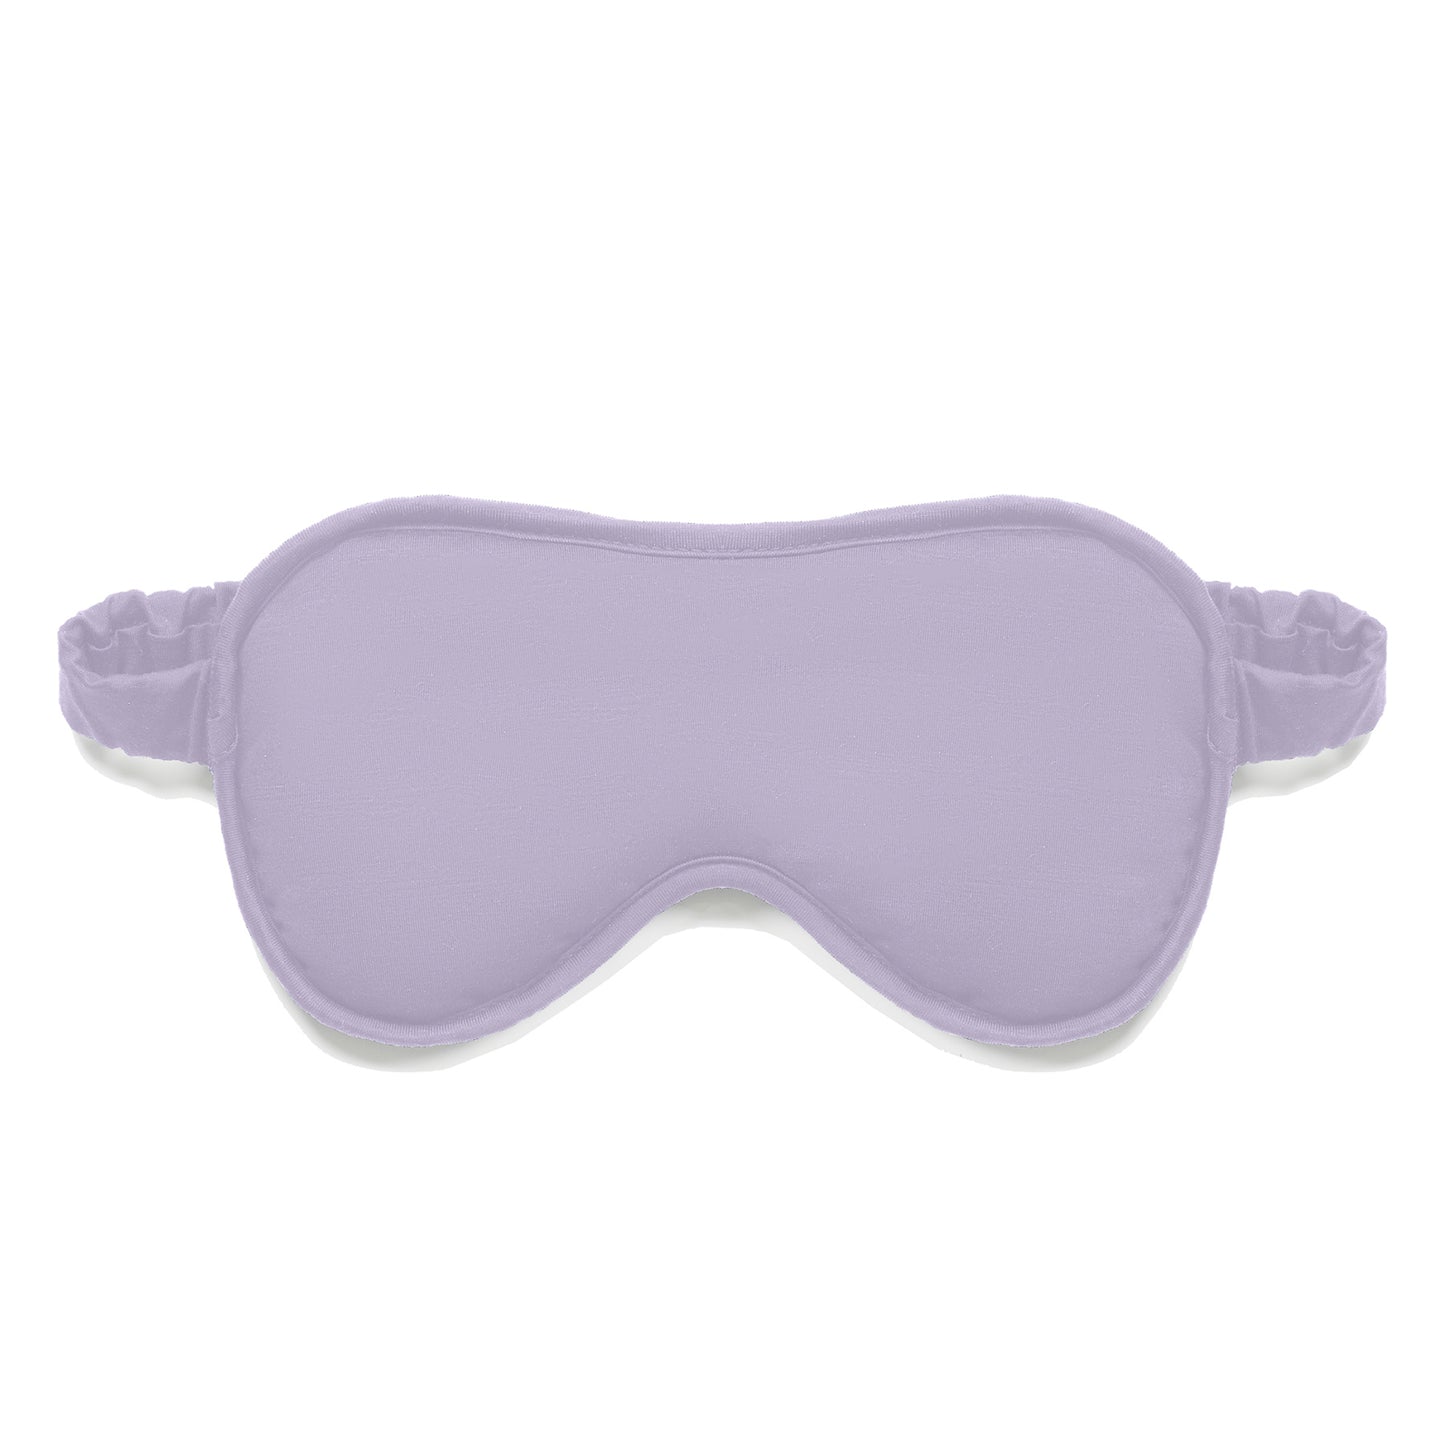 Gift set cooling slip dress mask || Lavender